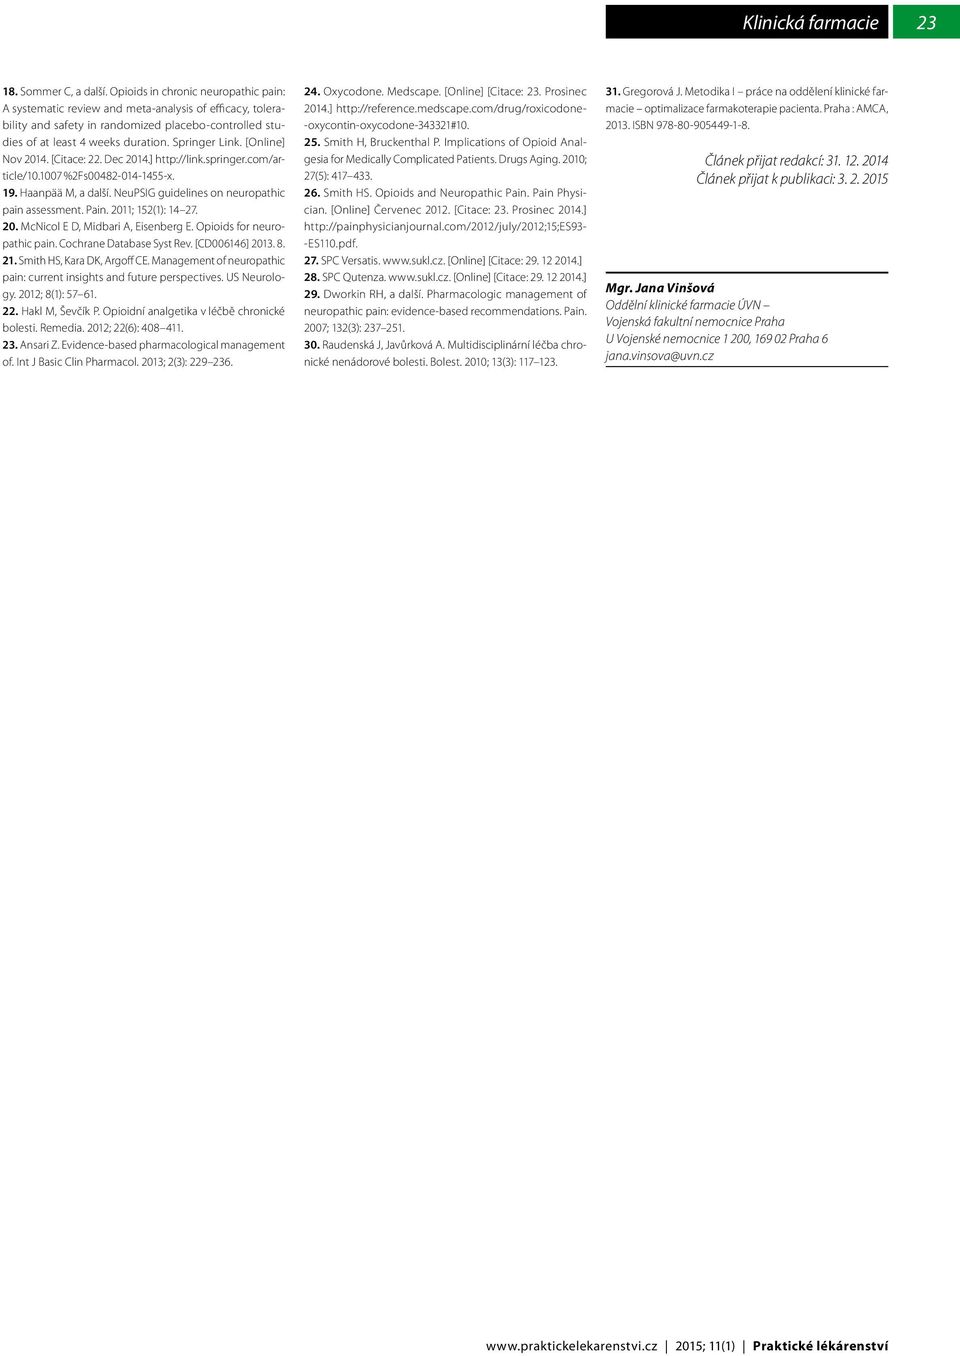 [Online] Nov 2014. [Citace: 22. Dec 2014.] http://link.springer.com/article/10.1007 %2Fs00482-014-1455-x. 19. Haanpää M, a další. NeuPSIG guidelines on neuropathic pain assessment. Pain.